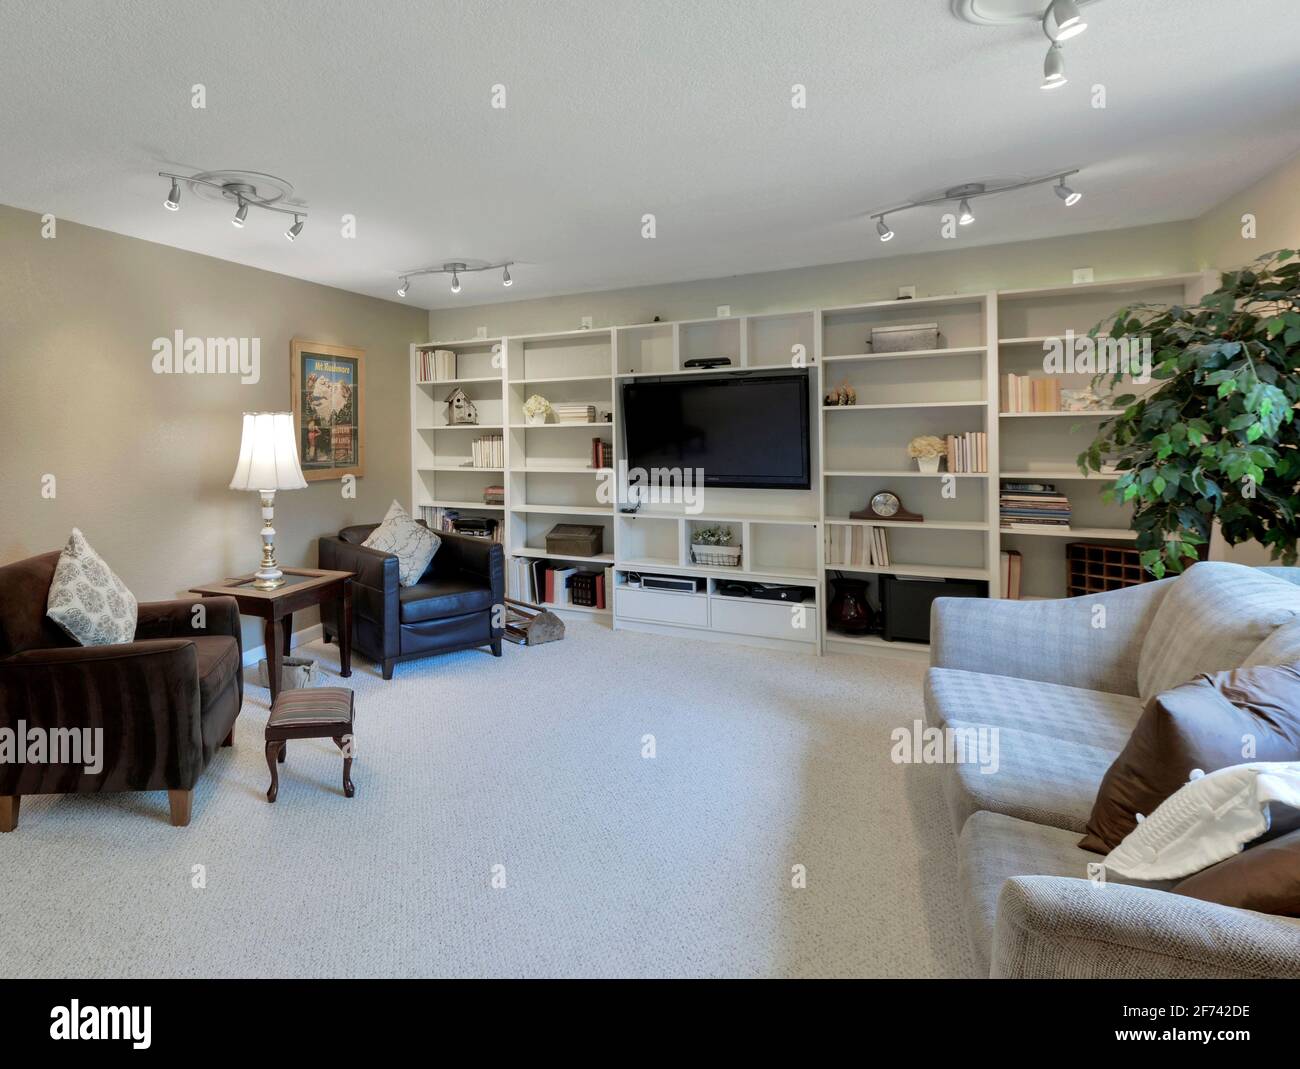 Modern residential living room interior Stock Photo